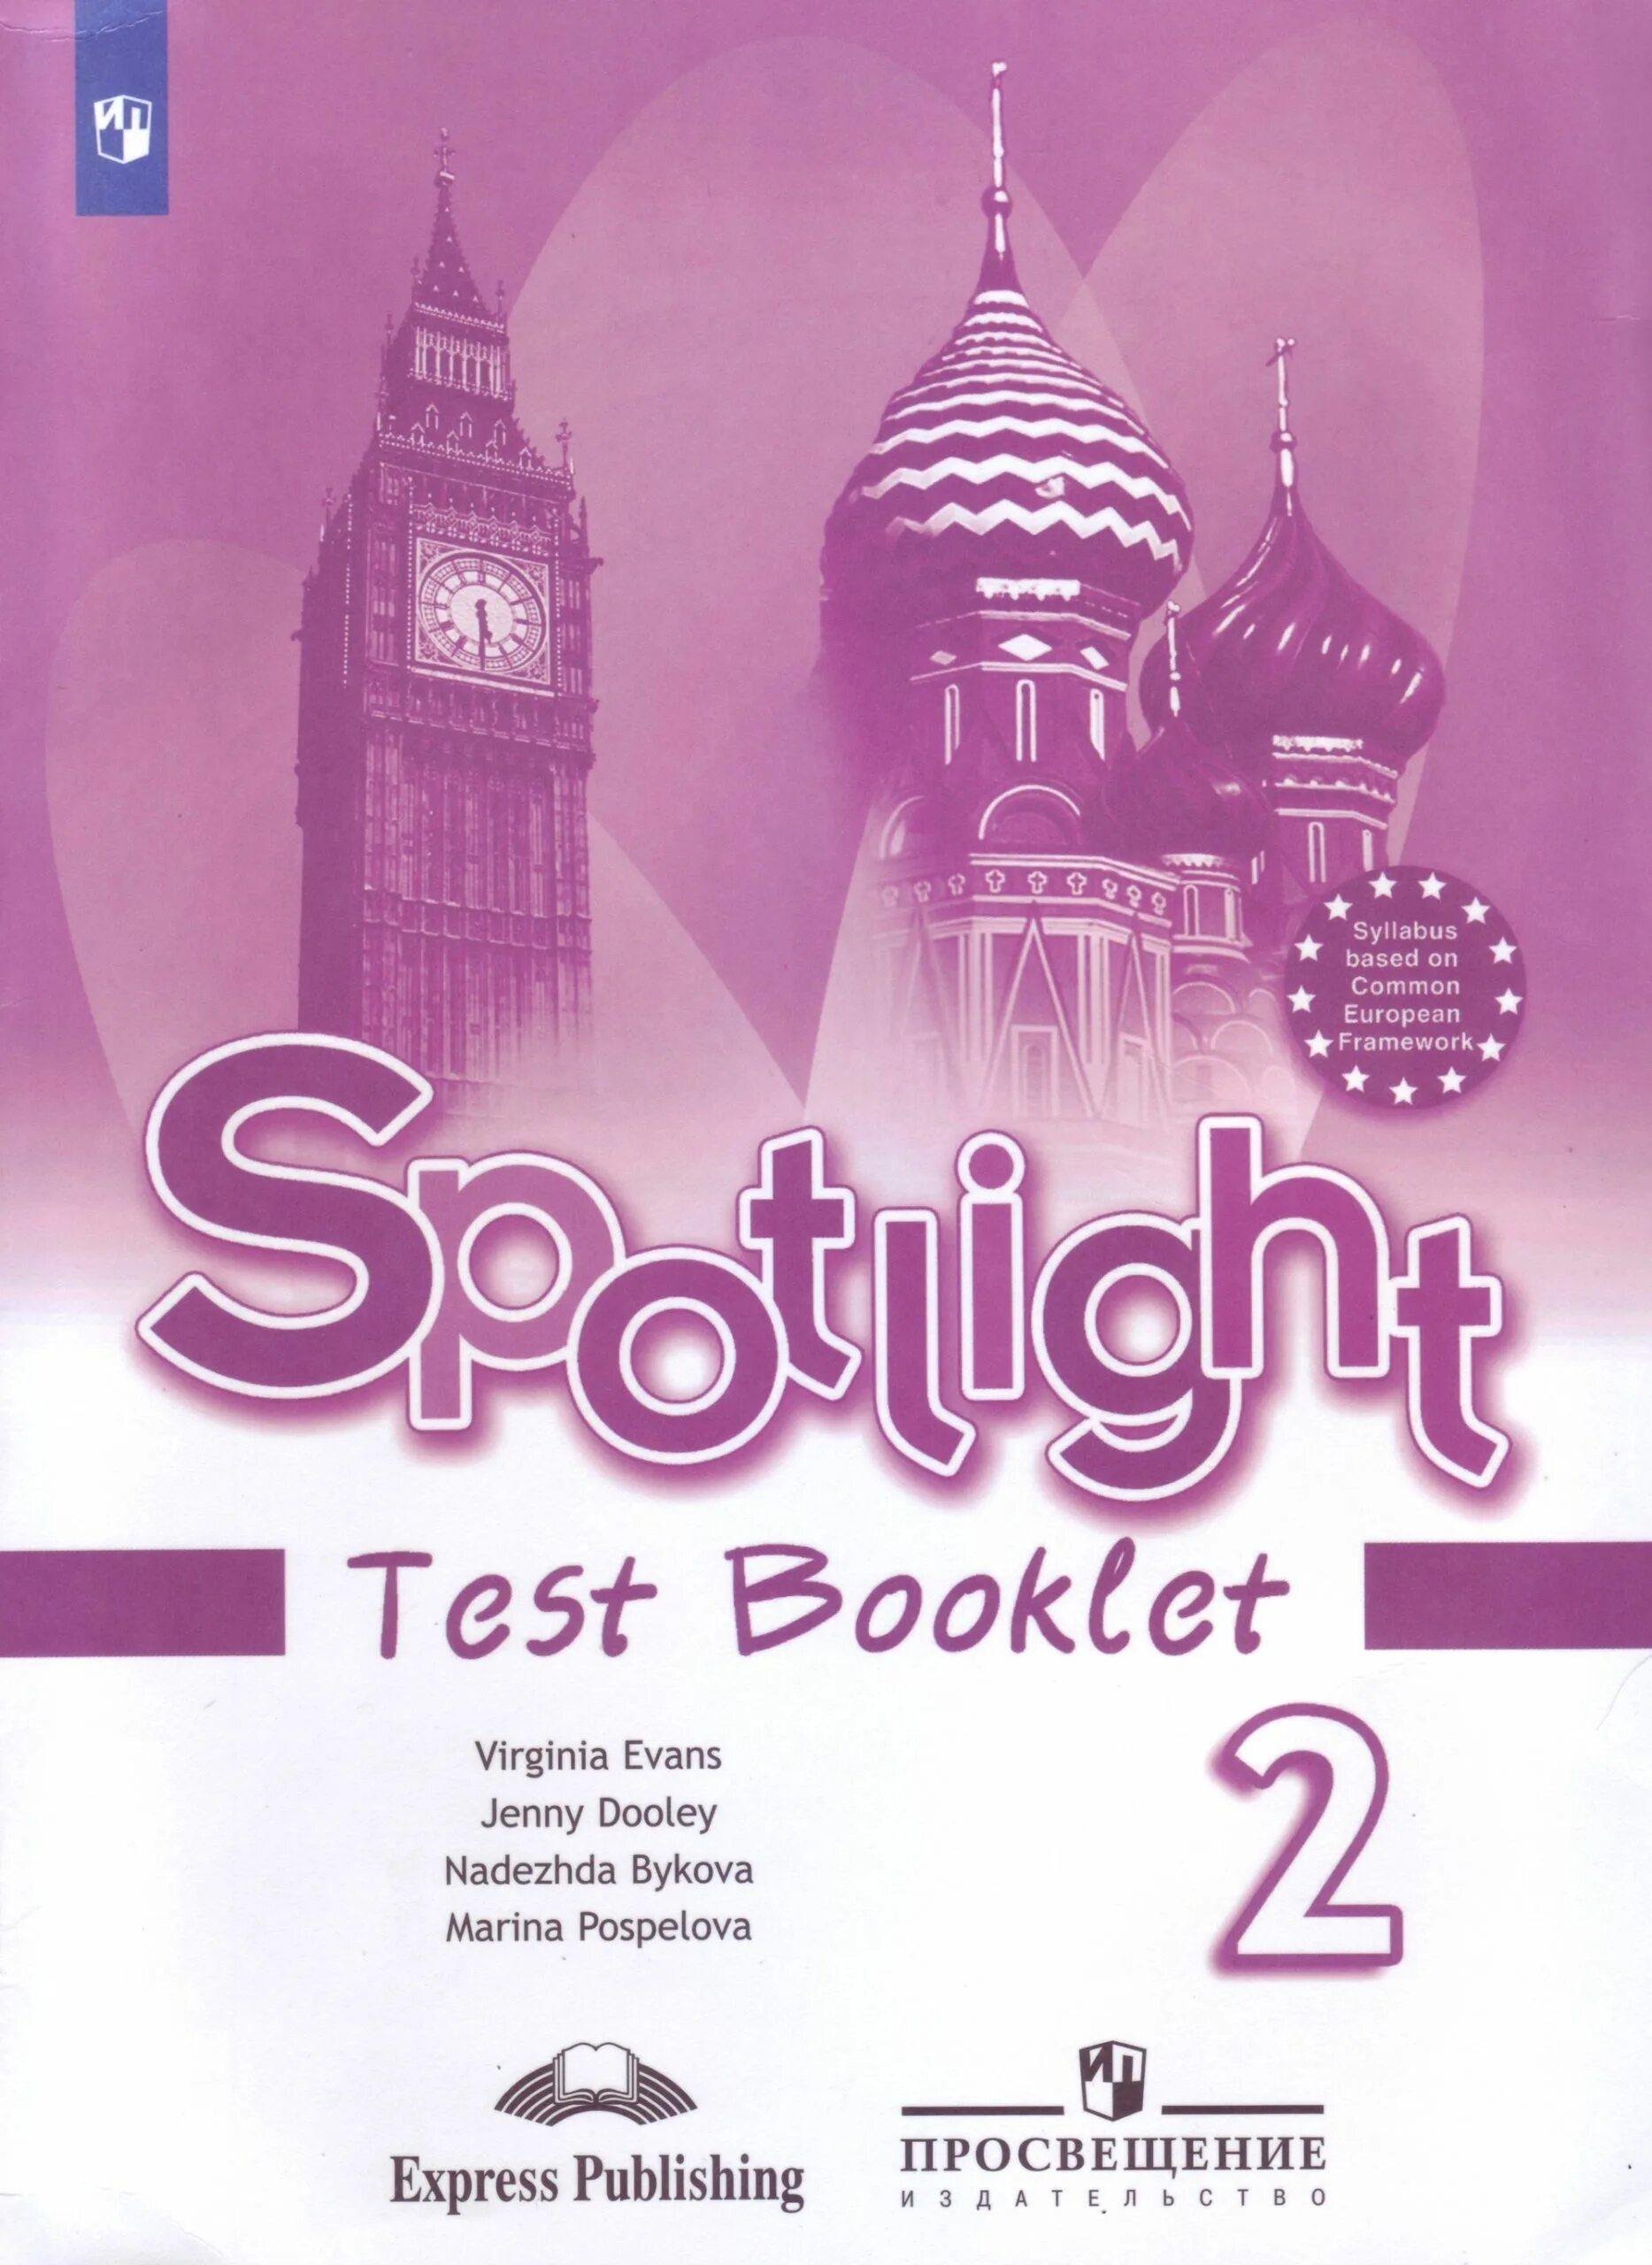 Лексика спотлайт 5 класс. Контрольные задания Spotlight по английскому Быкова 2 класс. Спотлайт 2 класс тест буклет. Sportlight 2 класс проверочные работы. Test booklet 2 Spotlight английский язык.